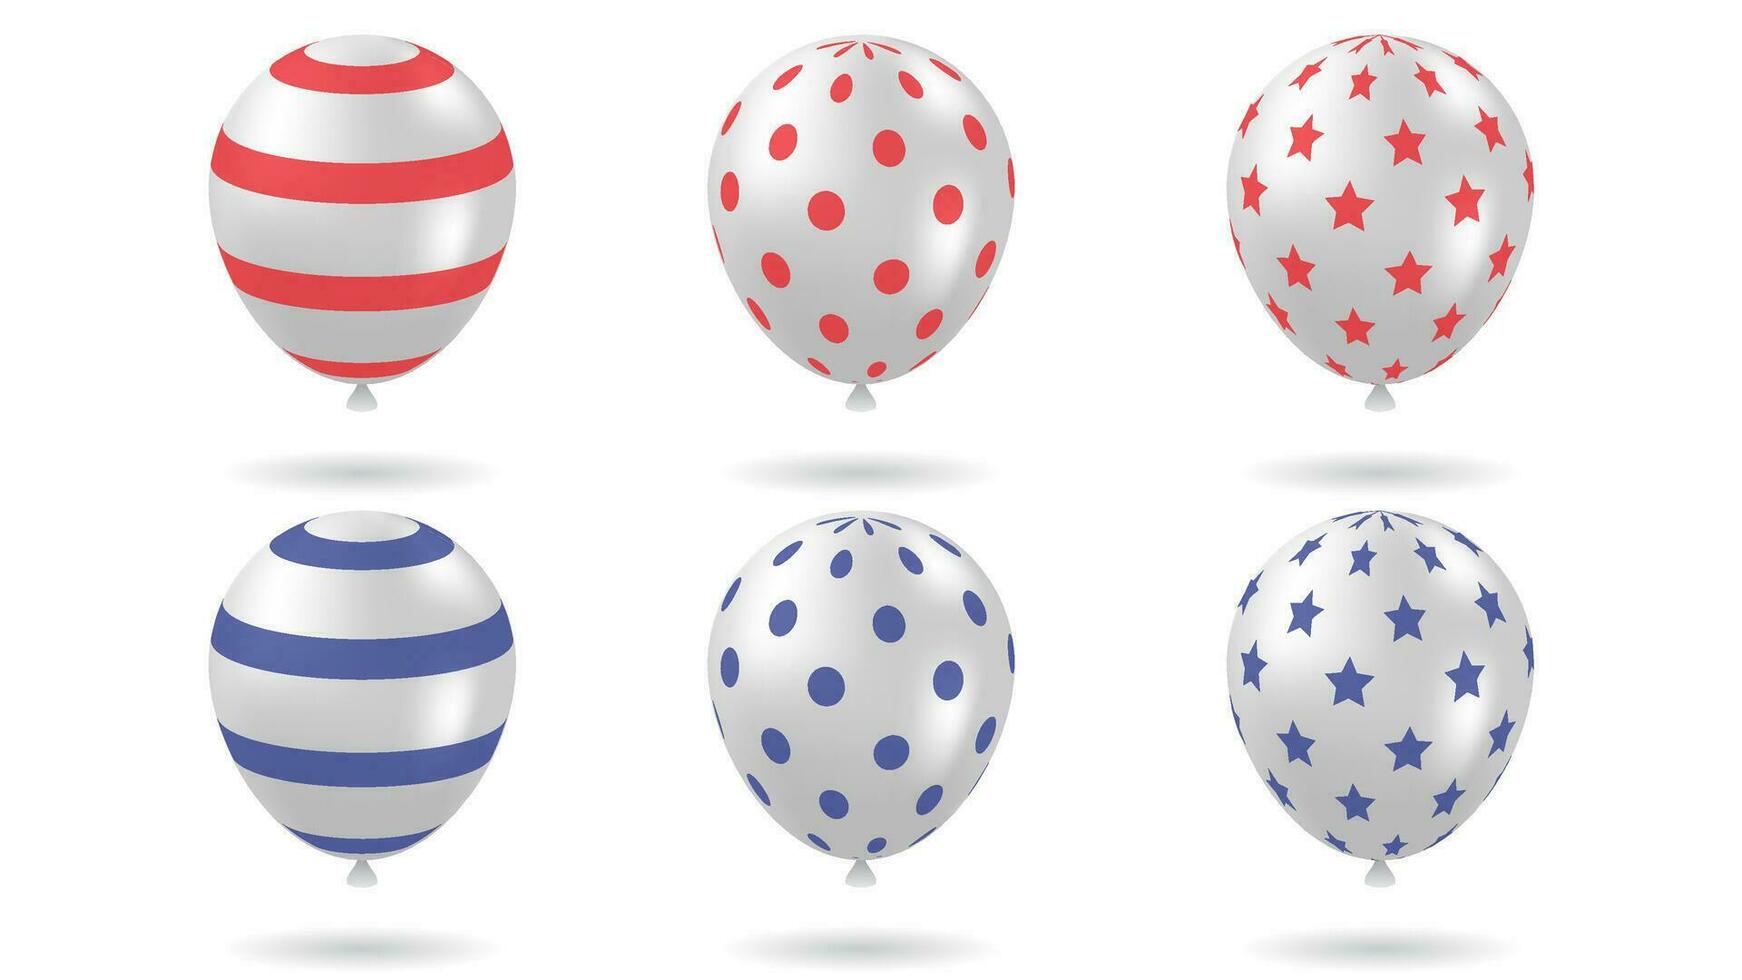 reeks van 3d ballonnen vector illustratie met zilver plus blauw en rood kleur variaties